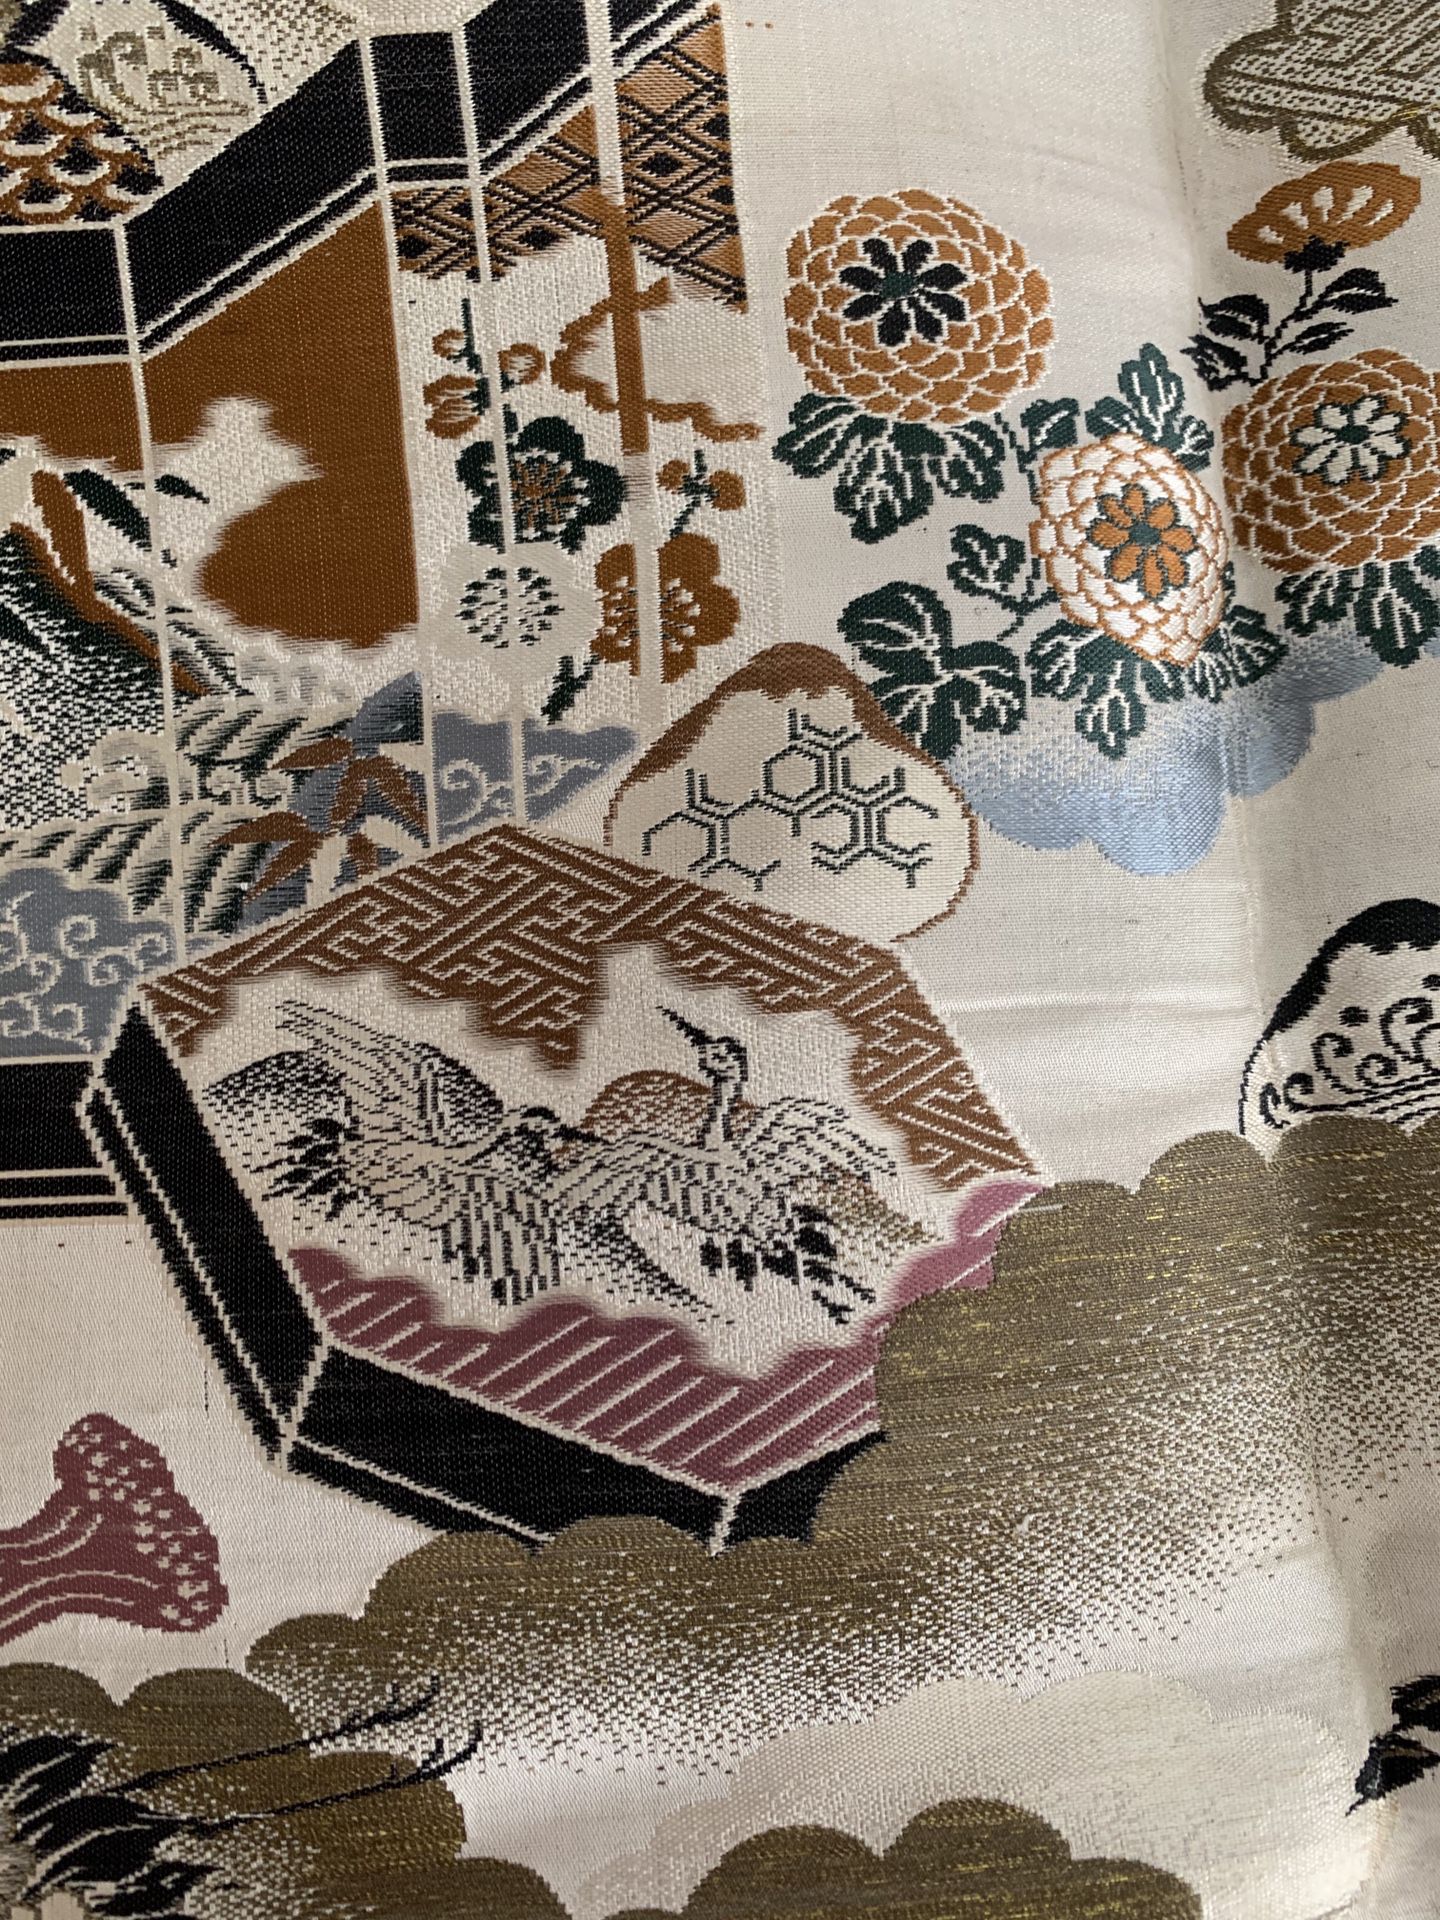 Chinese brocade fabric - herons, trees, houses, tassels - vintage